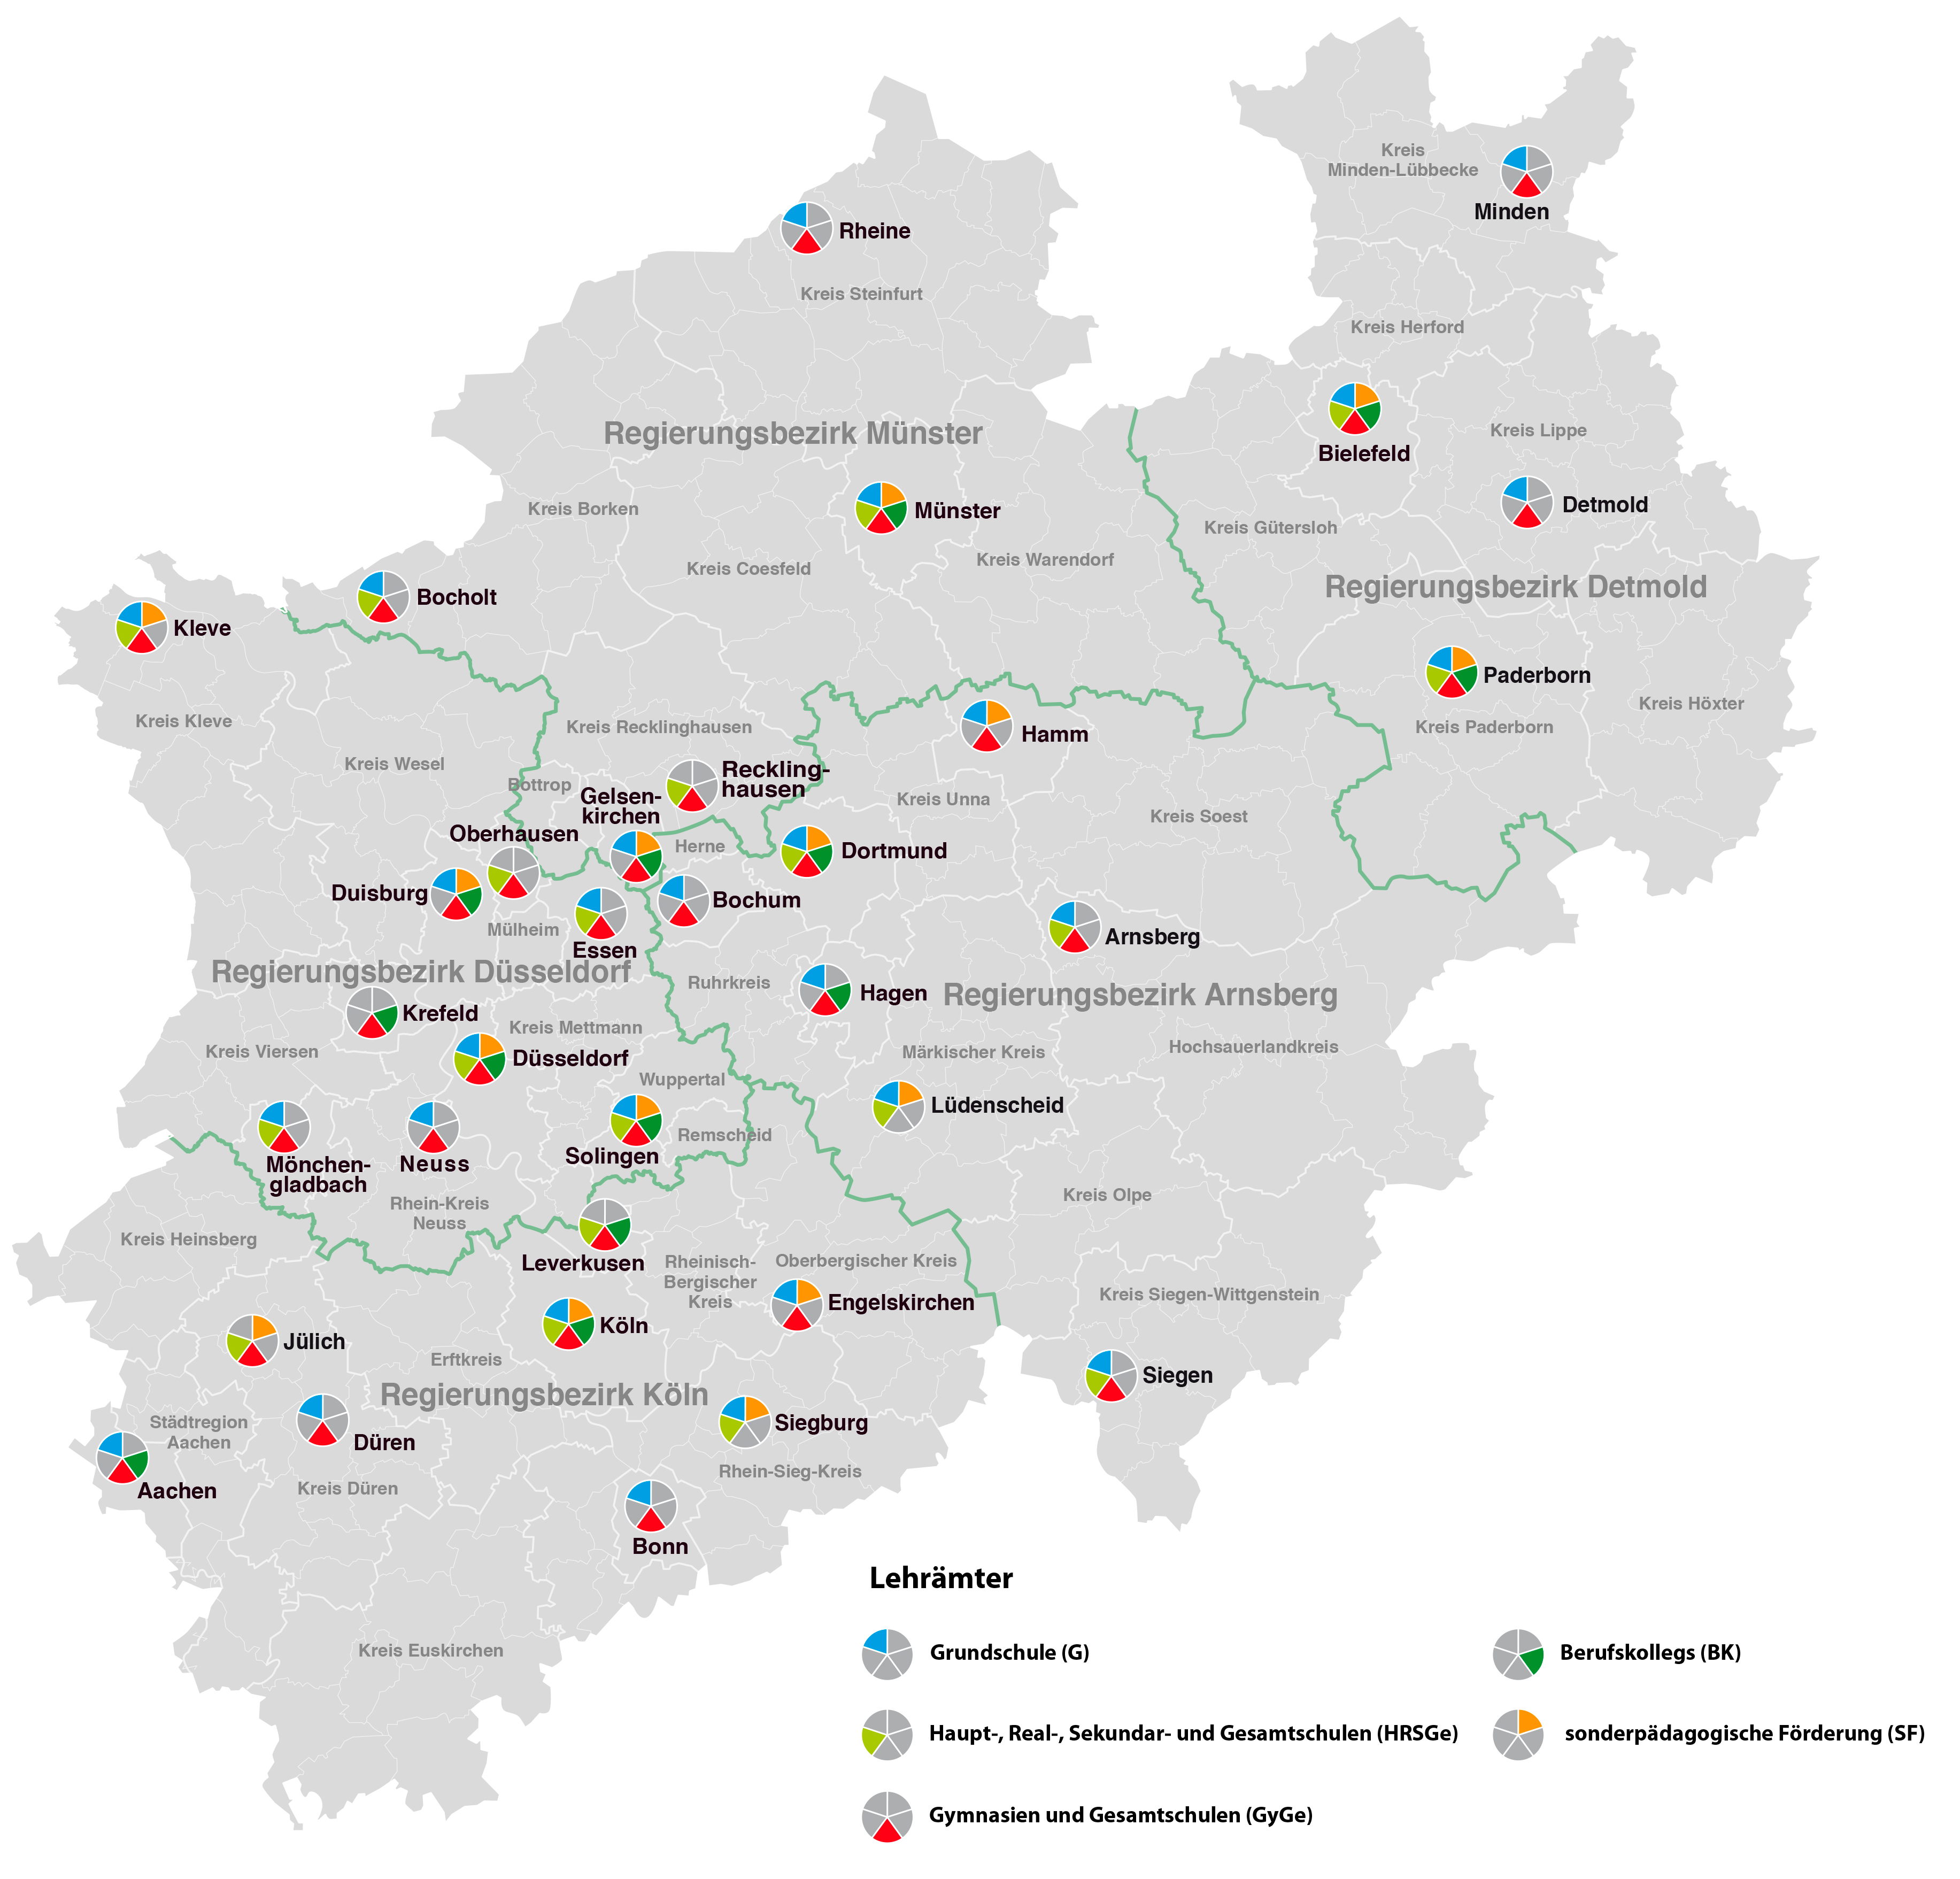 Karte des Landes NRW, auf der die Standorte der ZfsL dargestellt sind